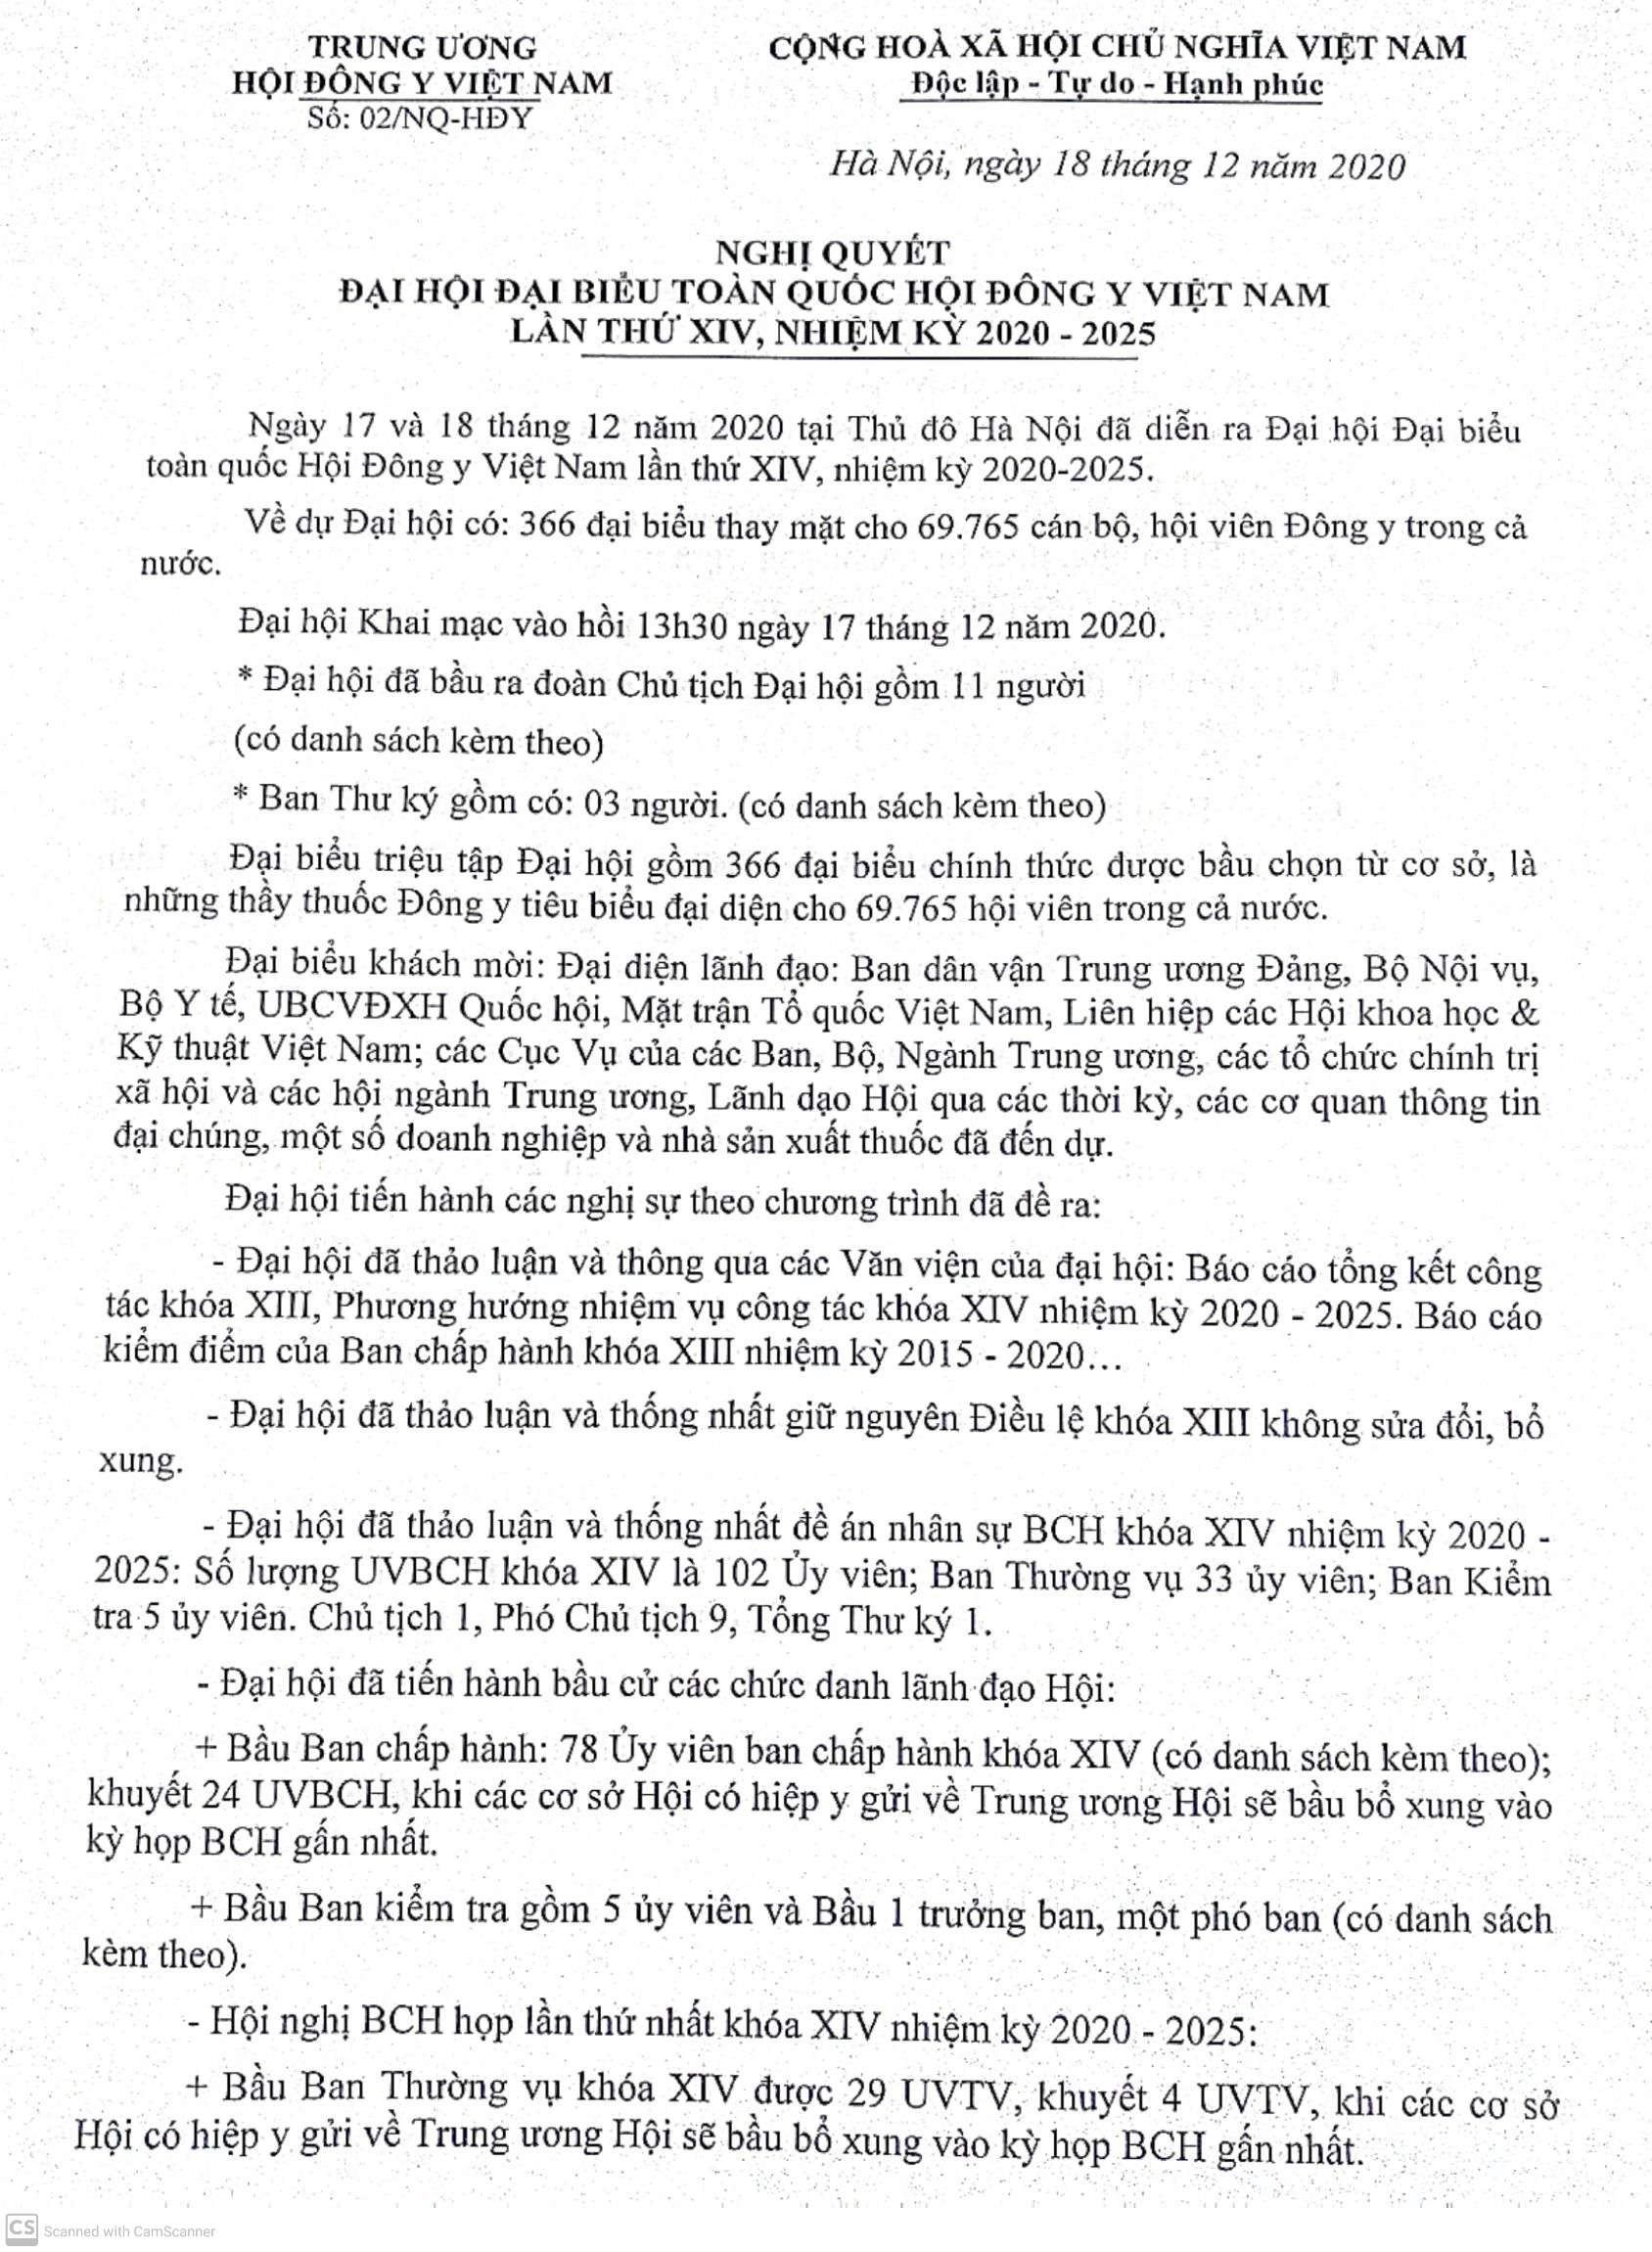 Nghị quyết Đại hội đại biểu toàn quốc Hội Đông y Việt Nam lần thứ XIV, Nhiệm ký 2020-2025